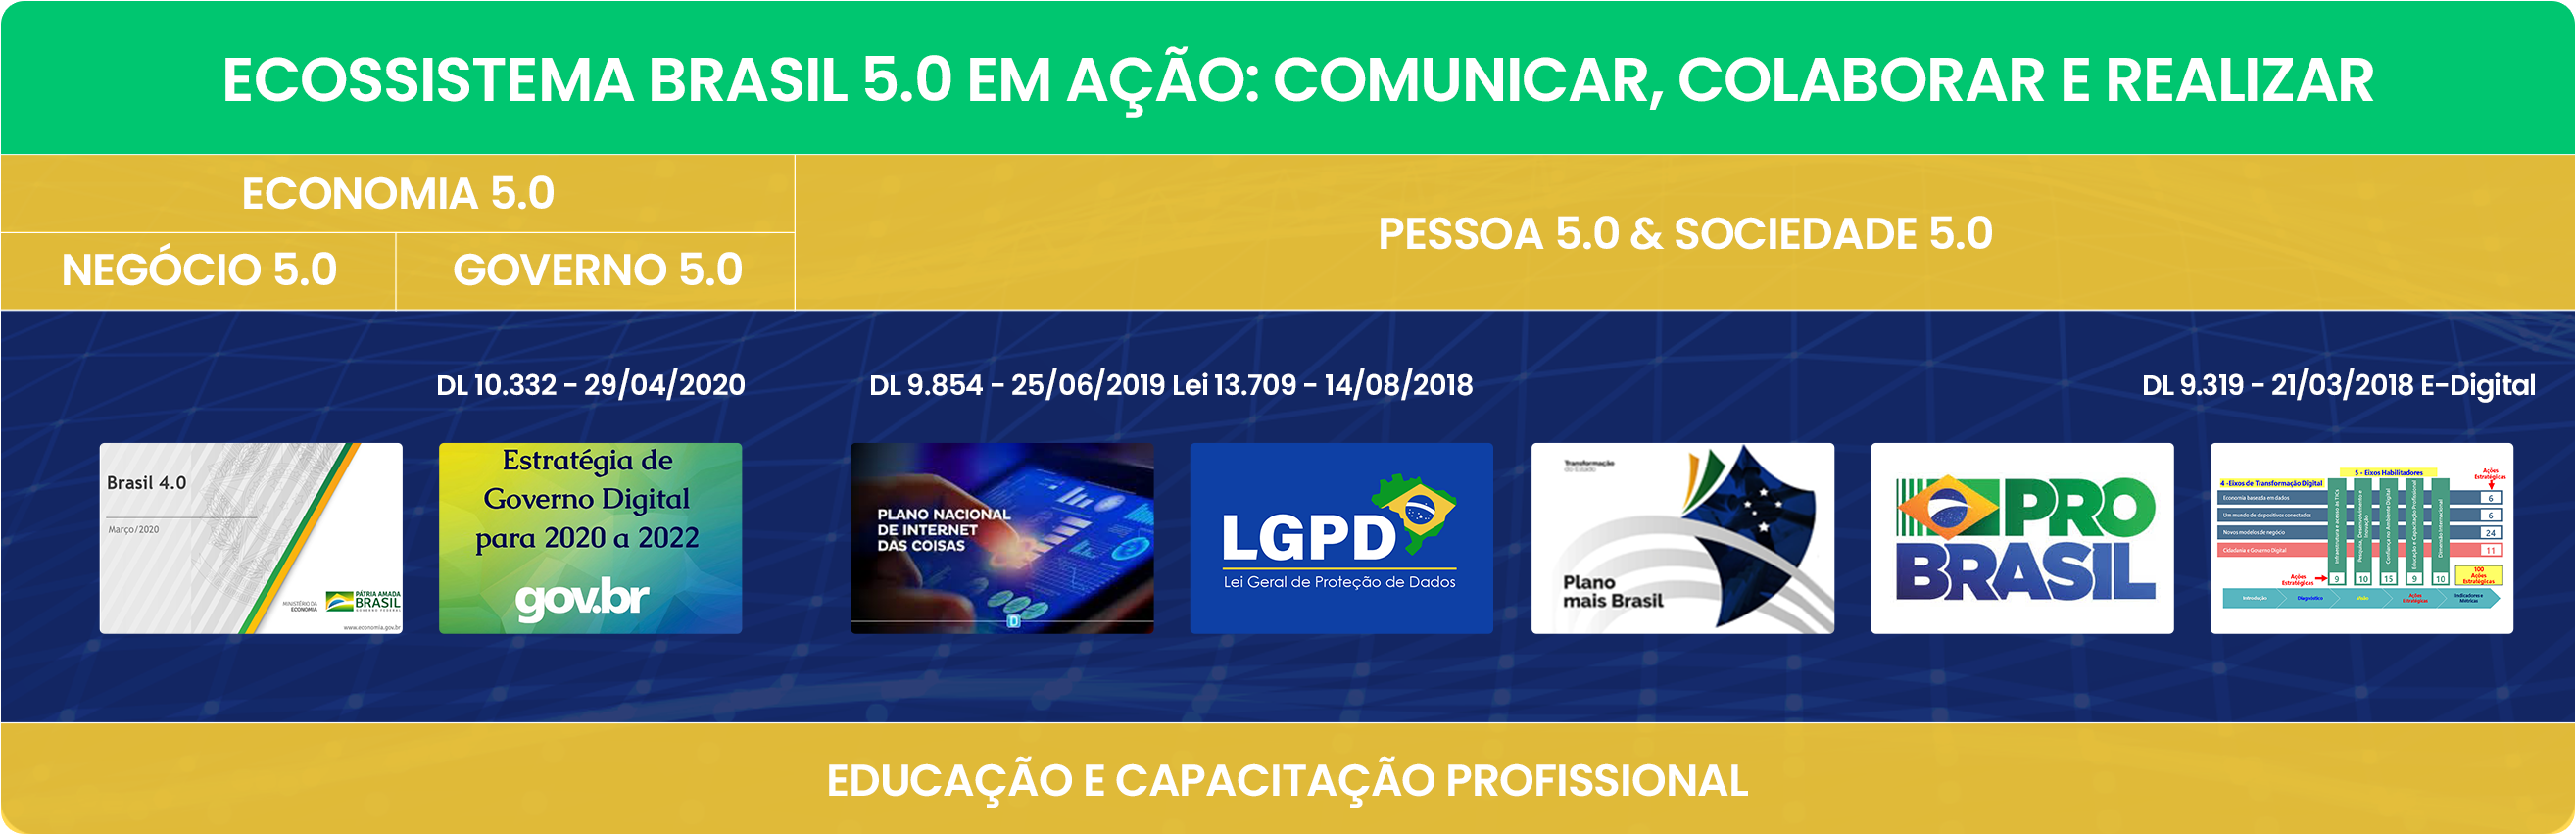 Ecossistema Brasil 5.0 em Ação